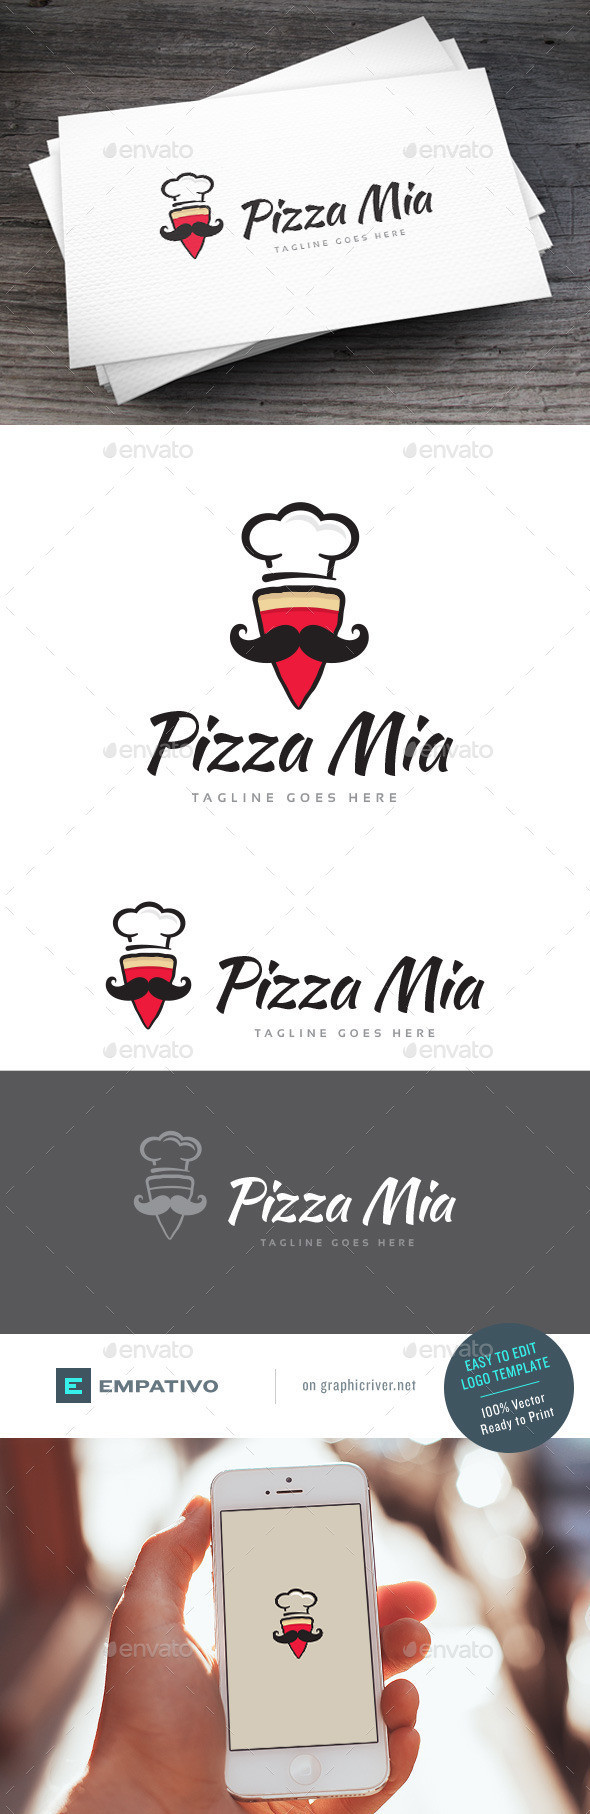 Pizza mia logo template